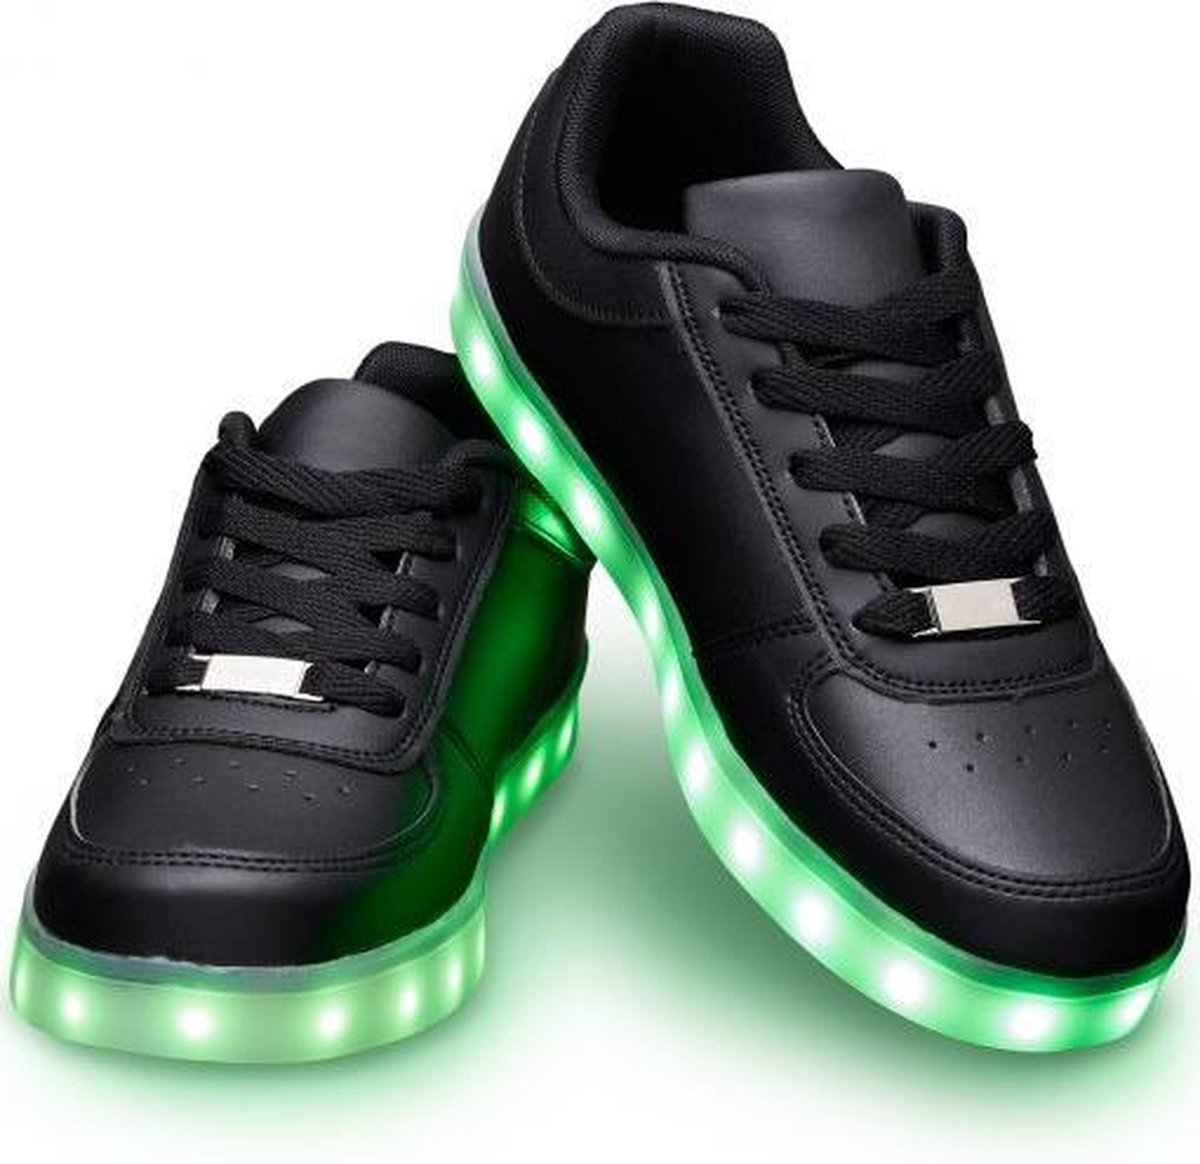 Schoenen met lichtjes - Lichtgevende led schoenen - Zwart - Maat 40